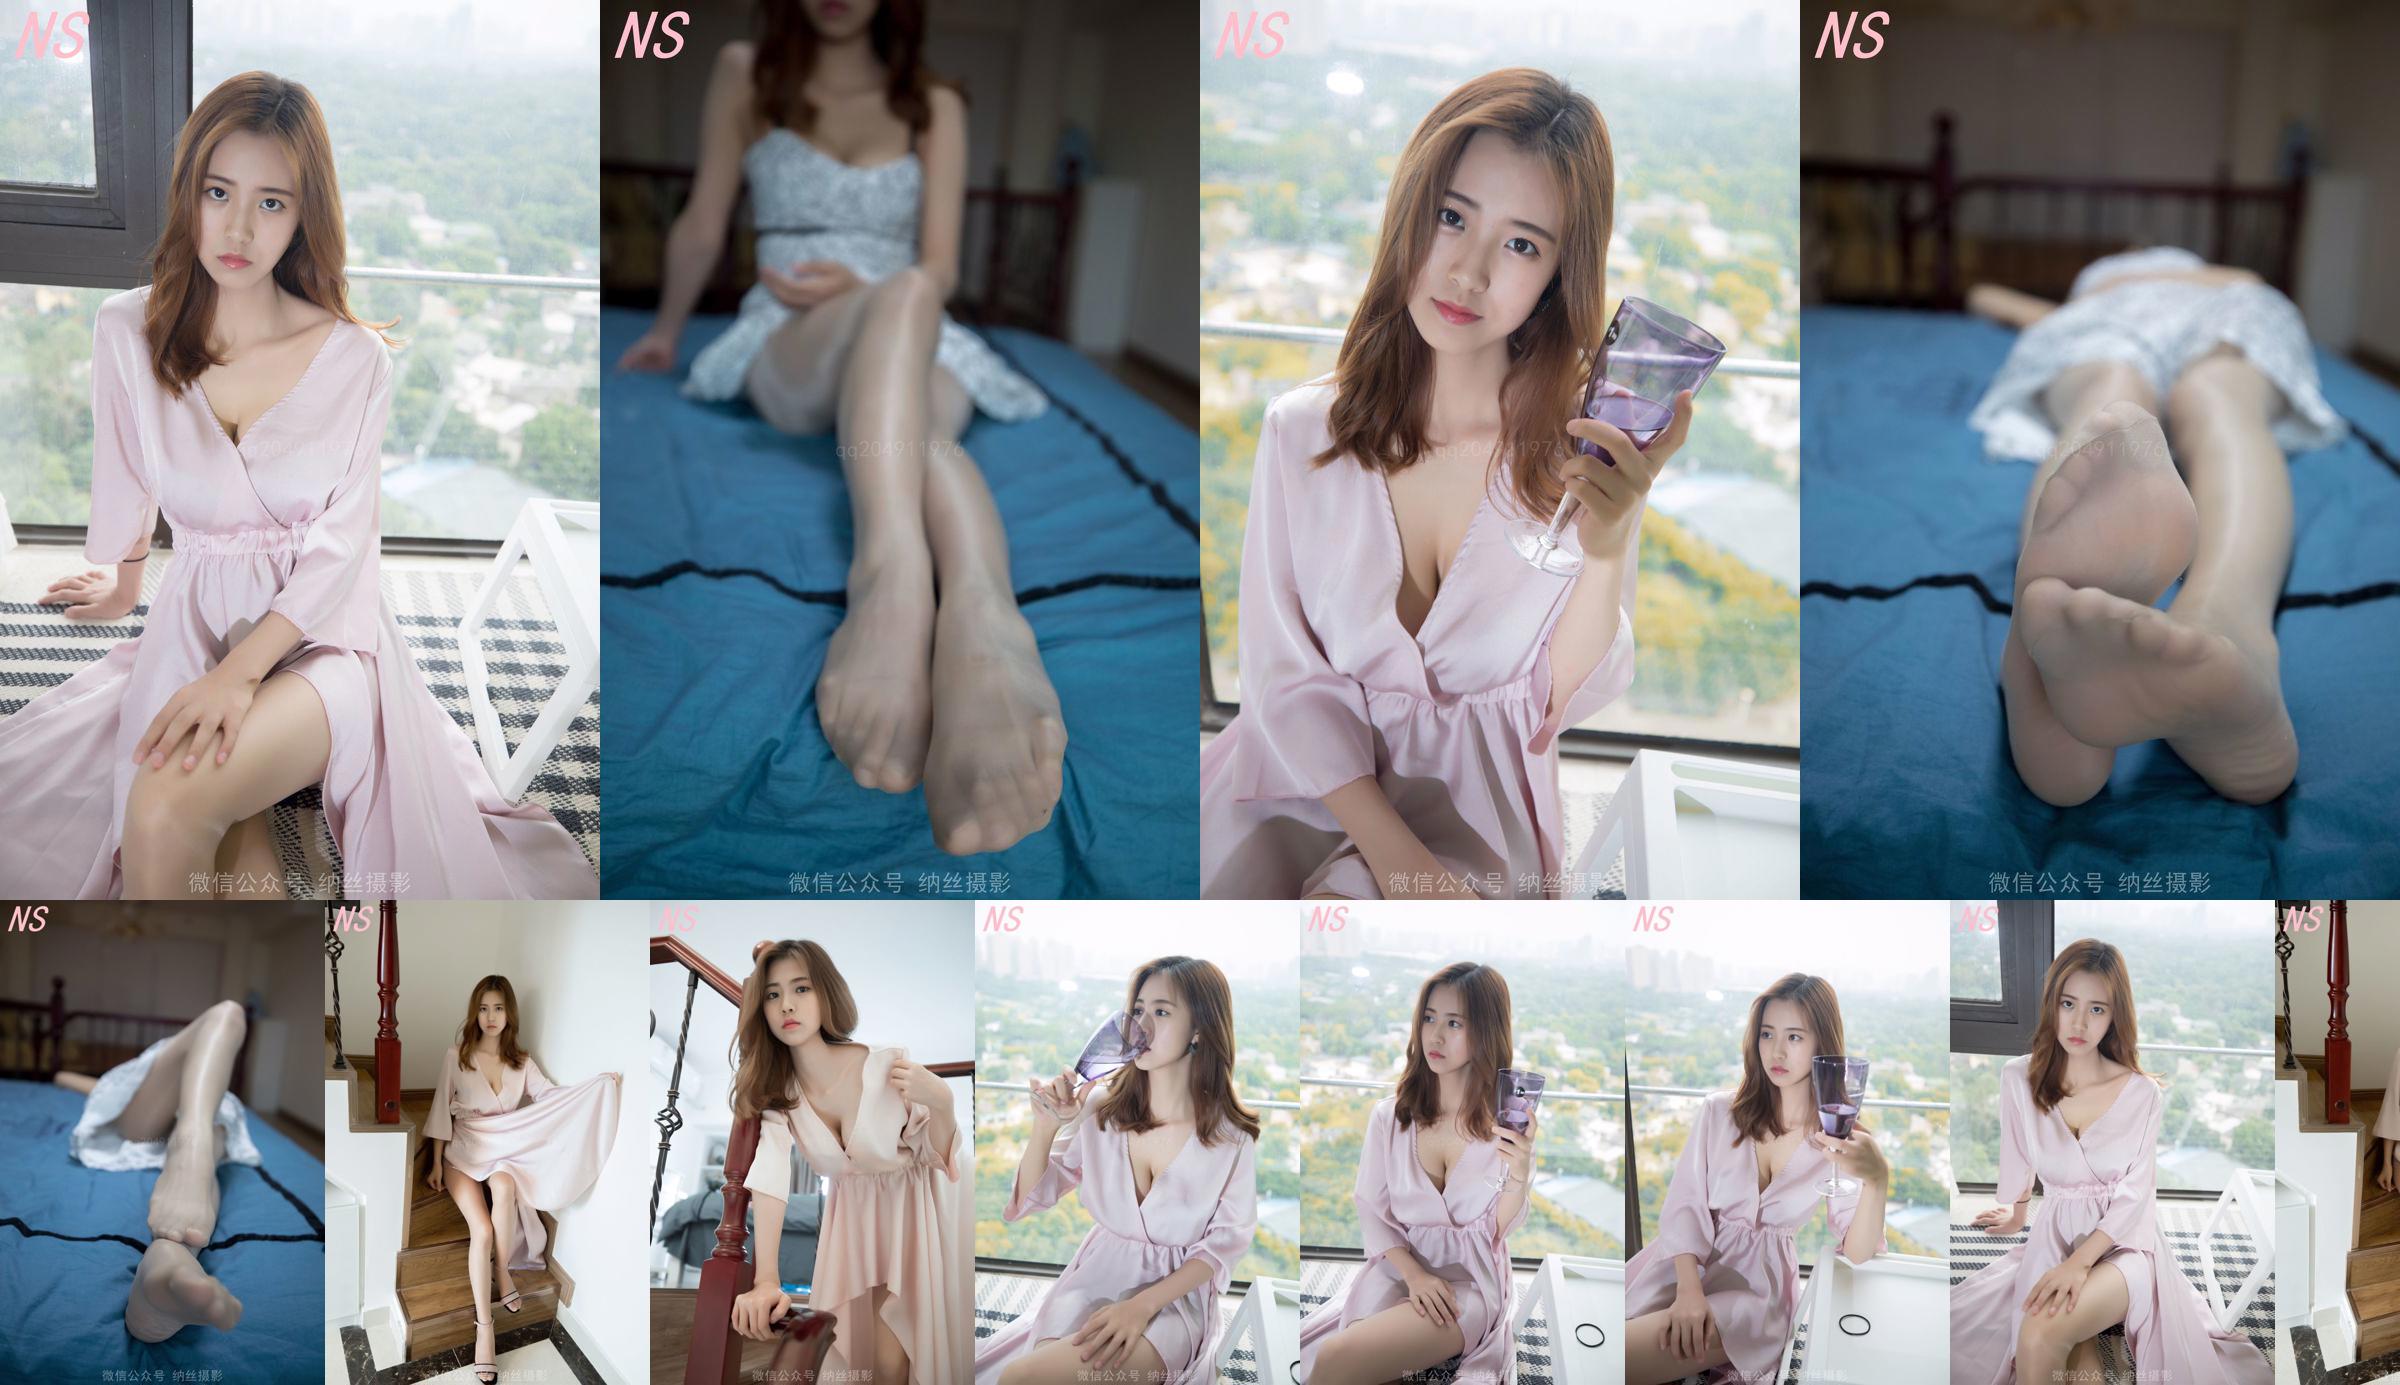 Beauty anchor Hanshuang "The Temptation of Pajamas" [Nasi Photography] No.a8c13d Page 45